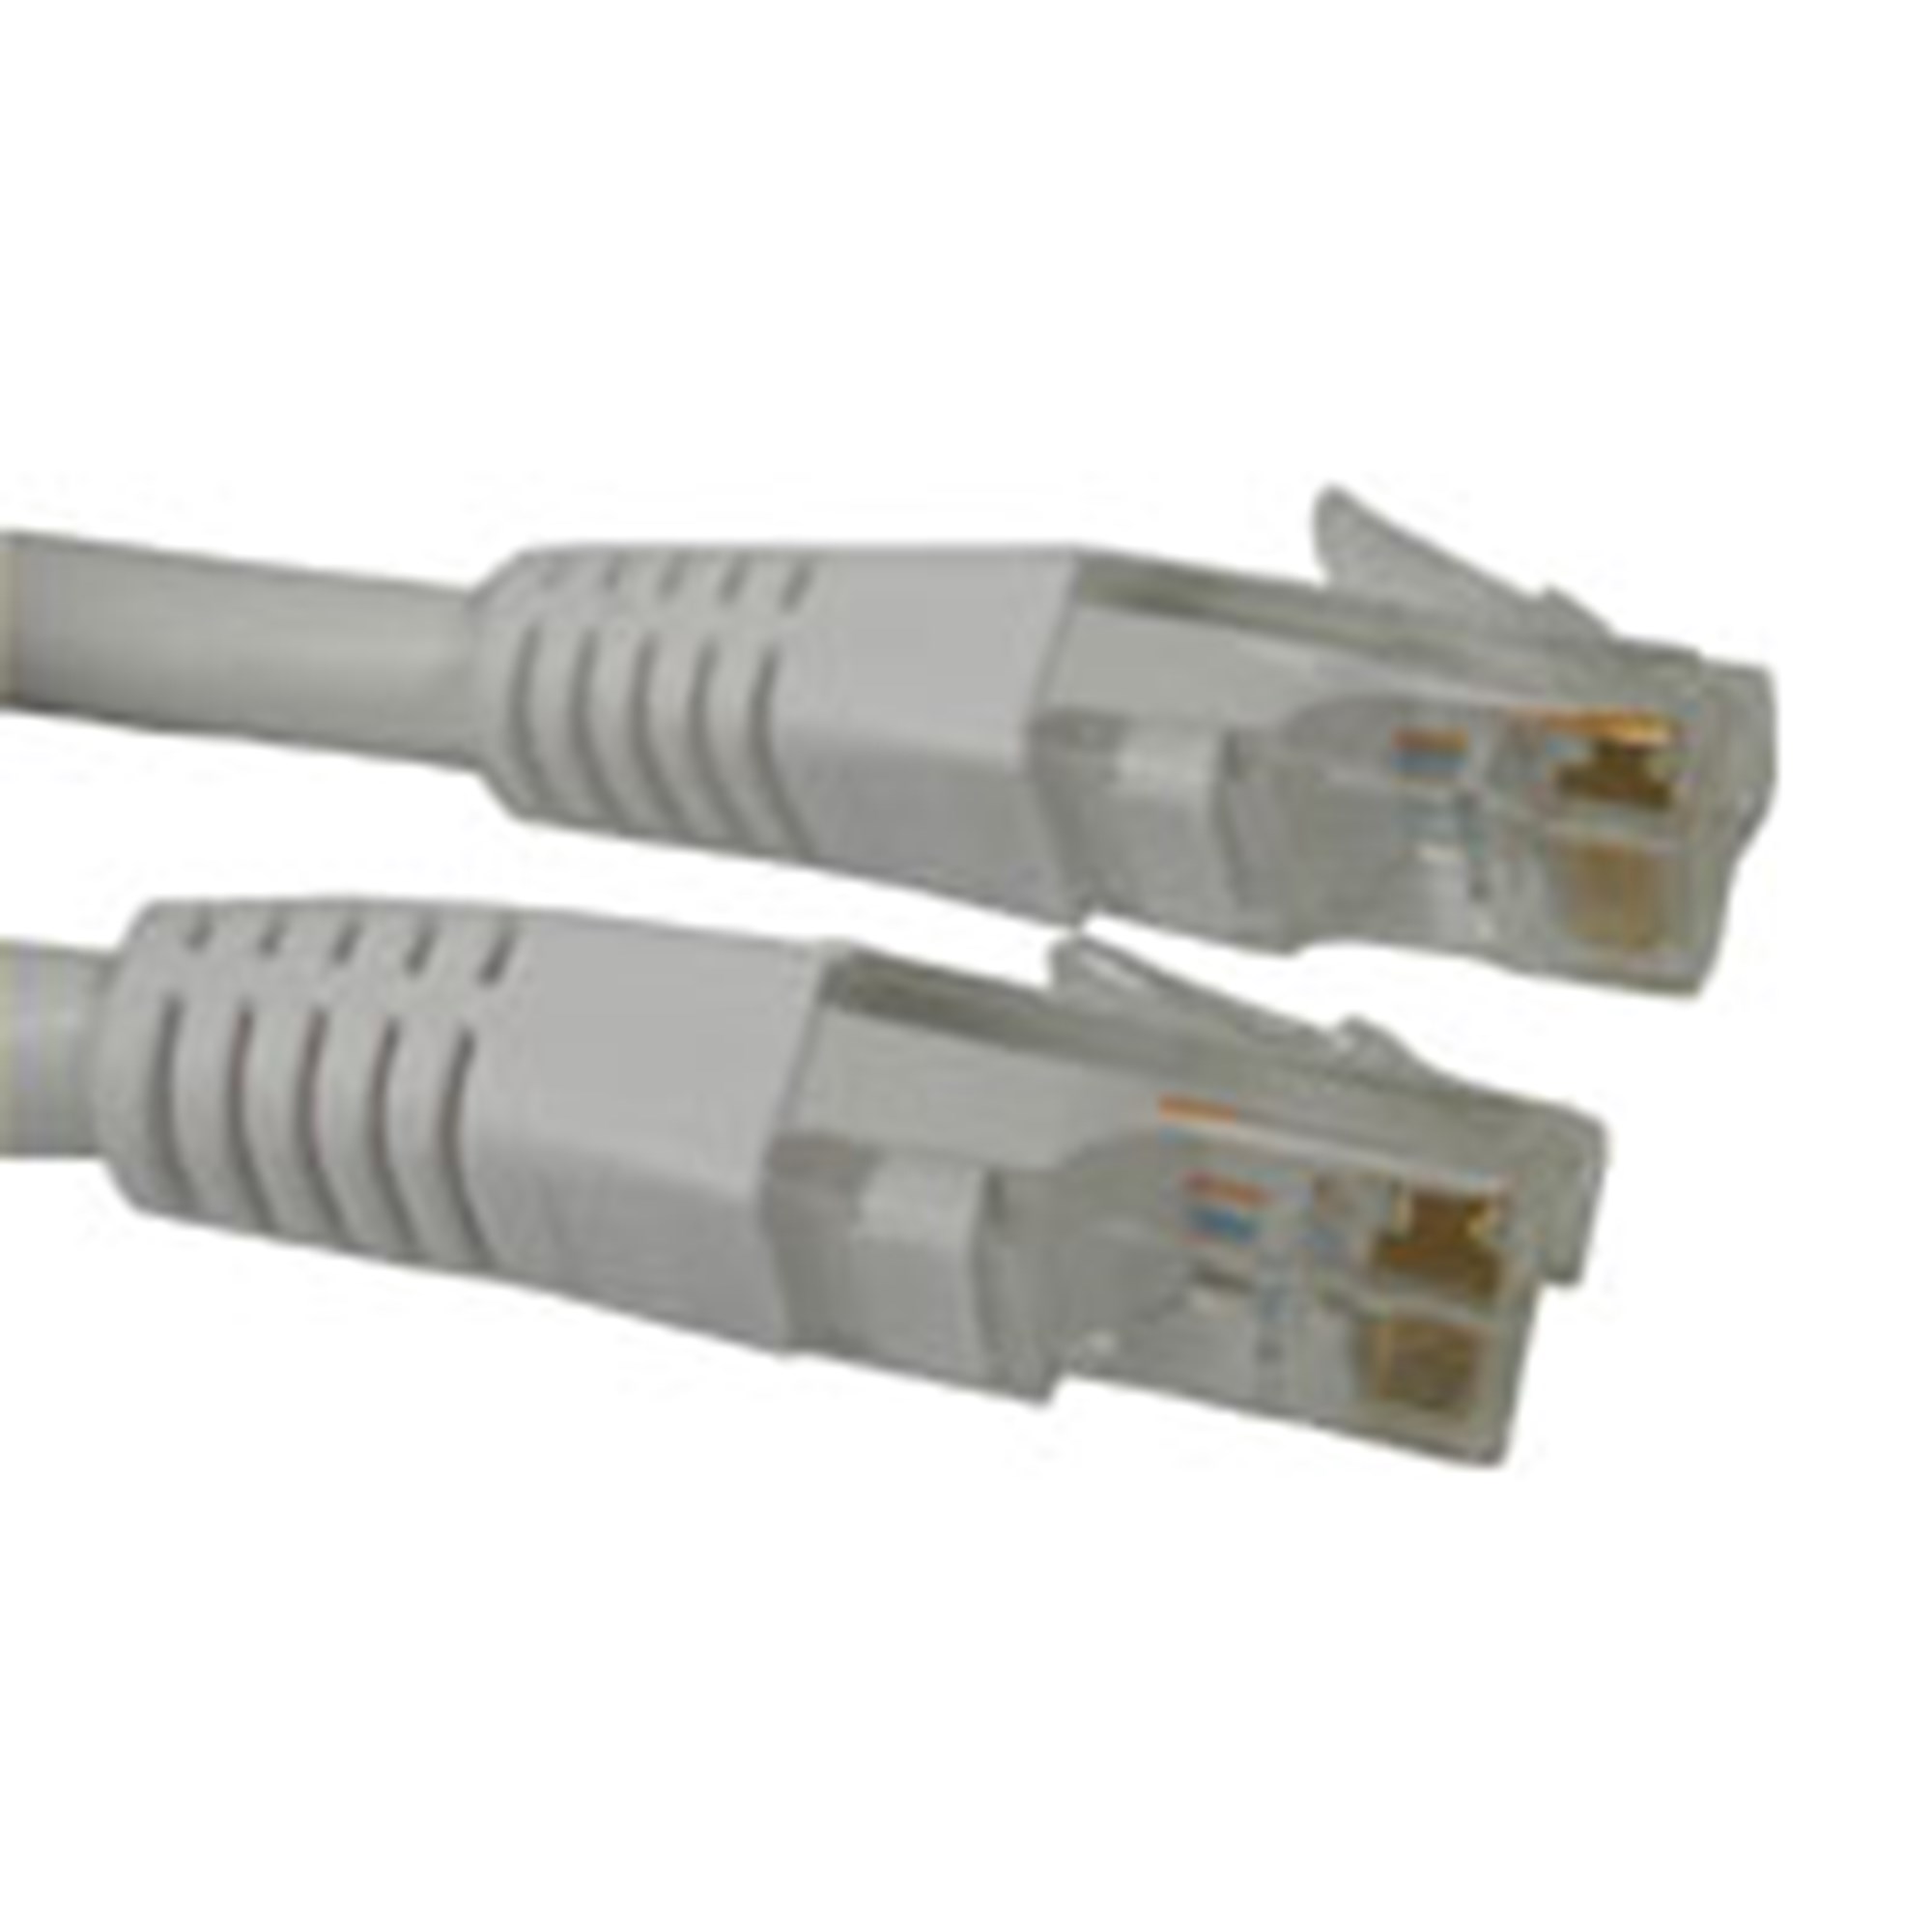 Billede af Network UTP Cable, Cat6, White (5m)